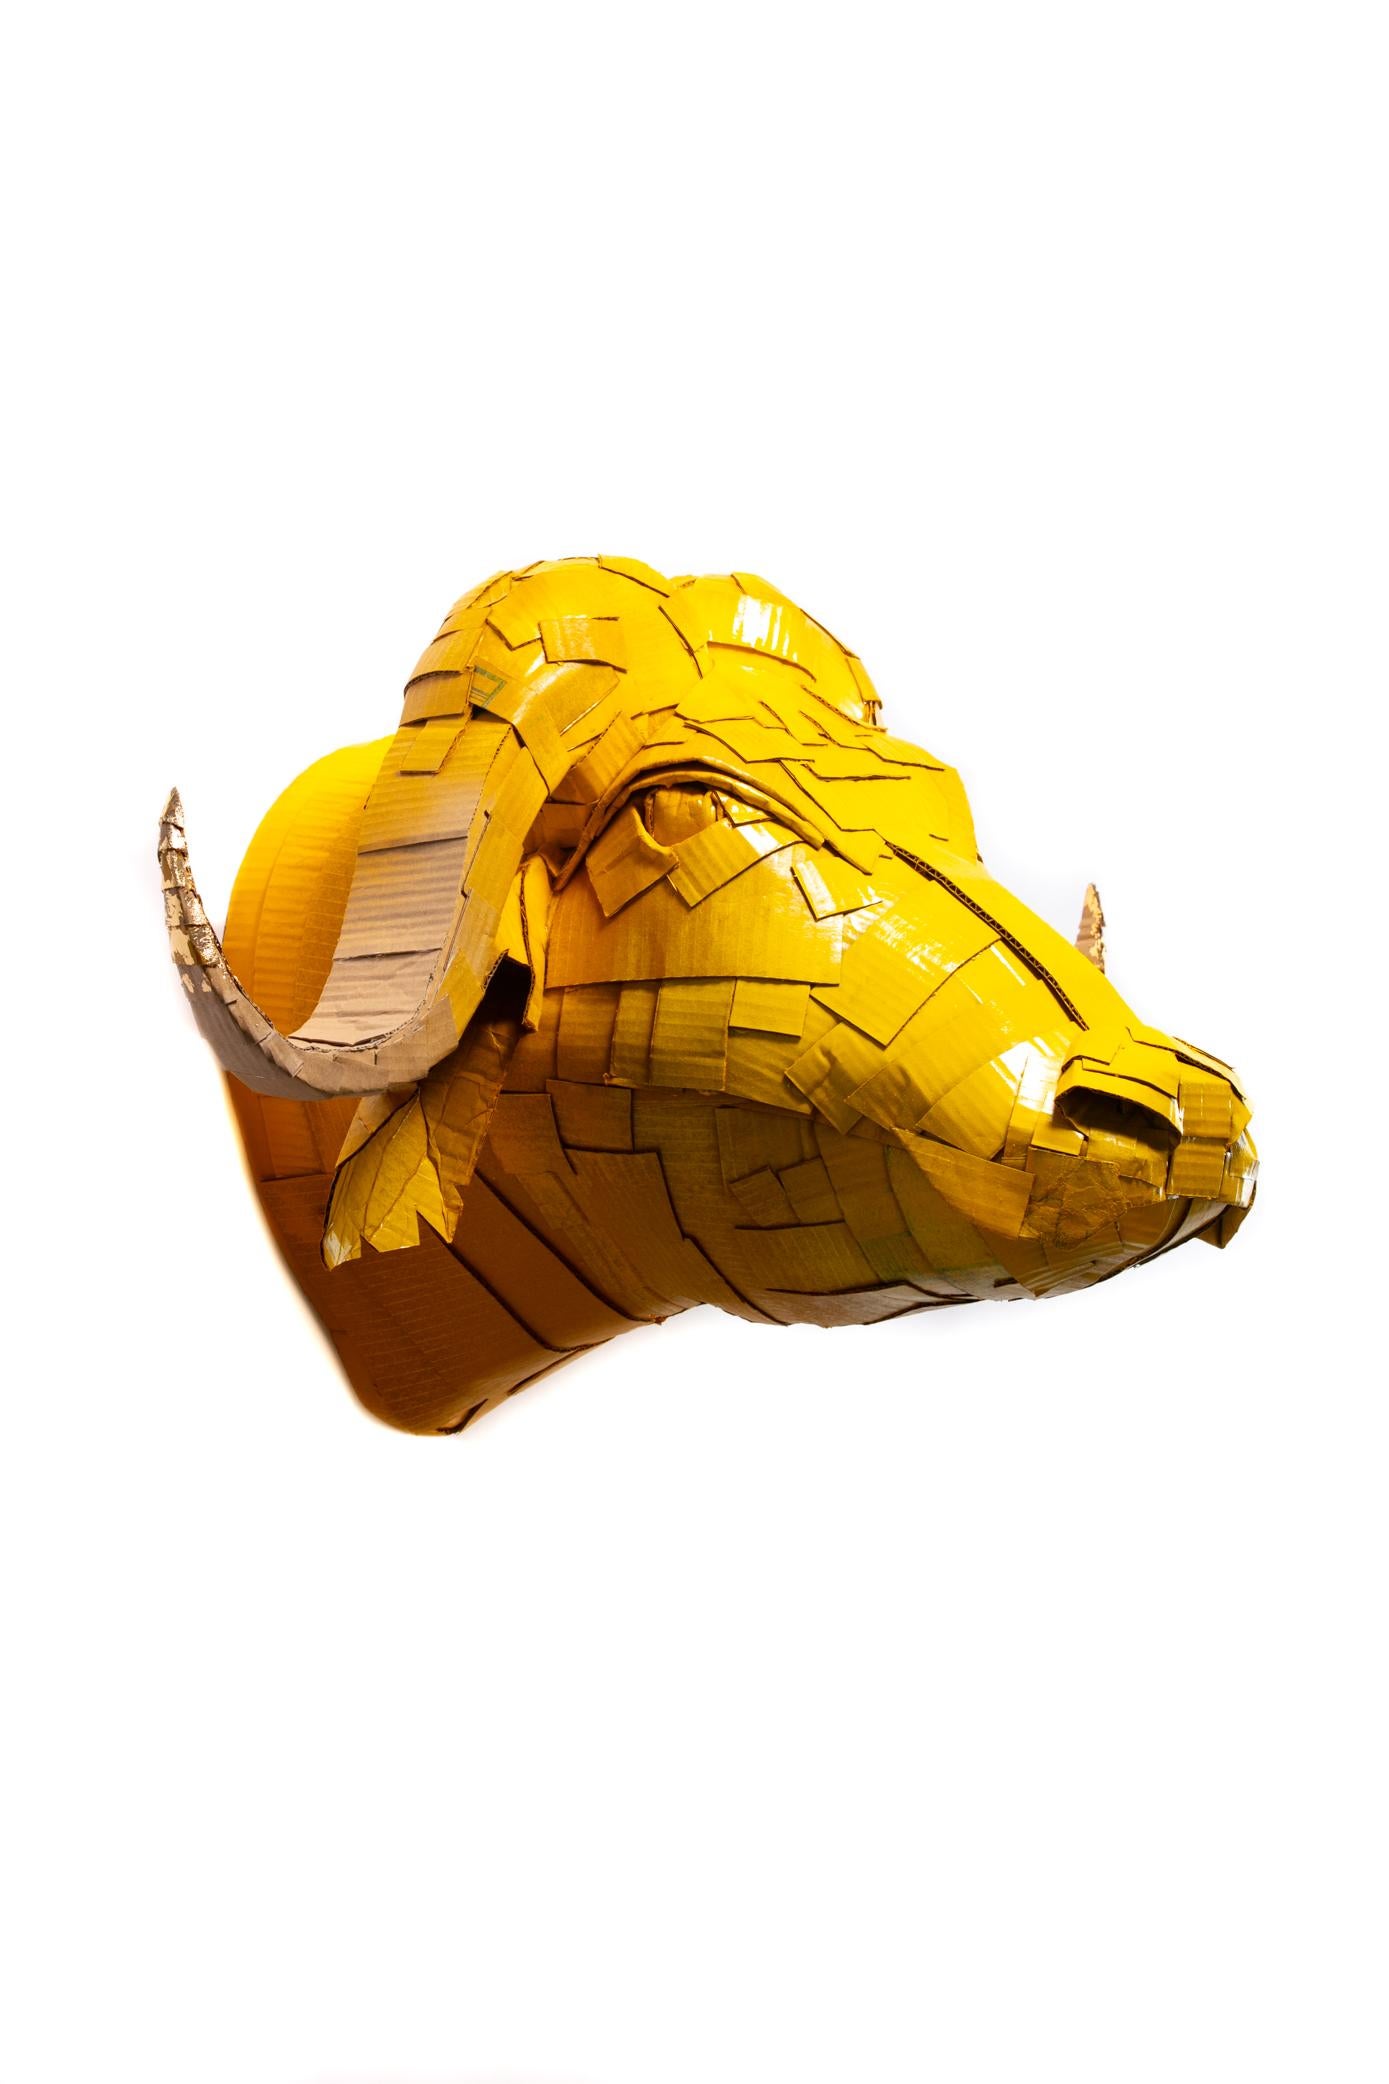 Grande sculpture de tête de buffle jaune caramel avec des détails de corne en feuille d'or, méticuleusement créée par l'artiste Justin King à partir de morceaux de carton et de papier mâché découpés et pliés individuellement. Le choix des couleurs